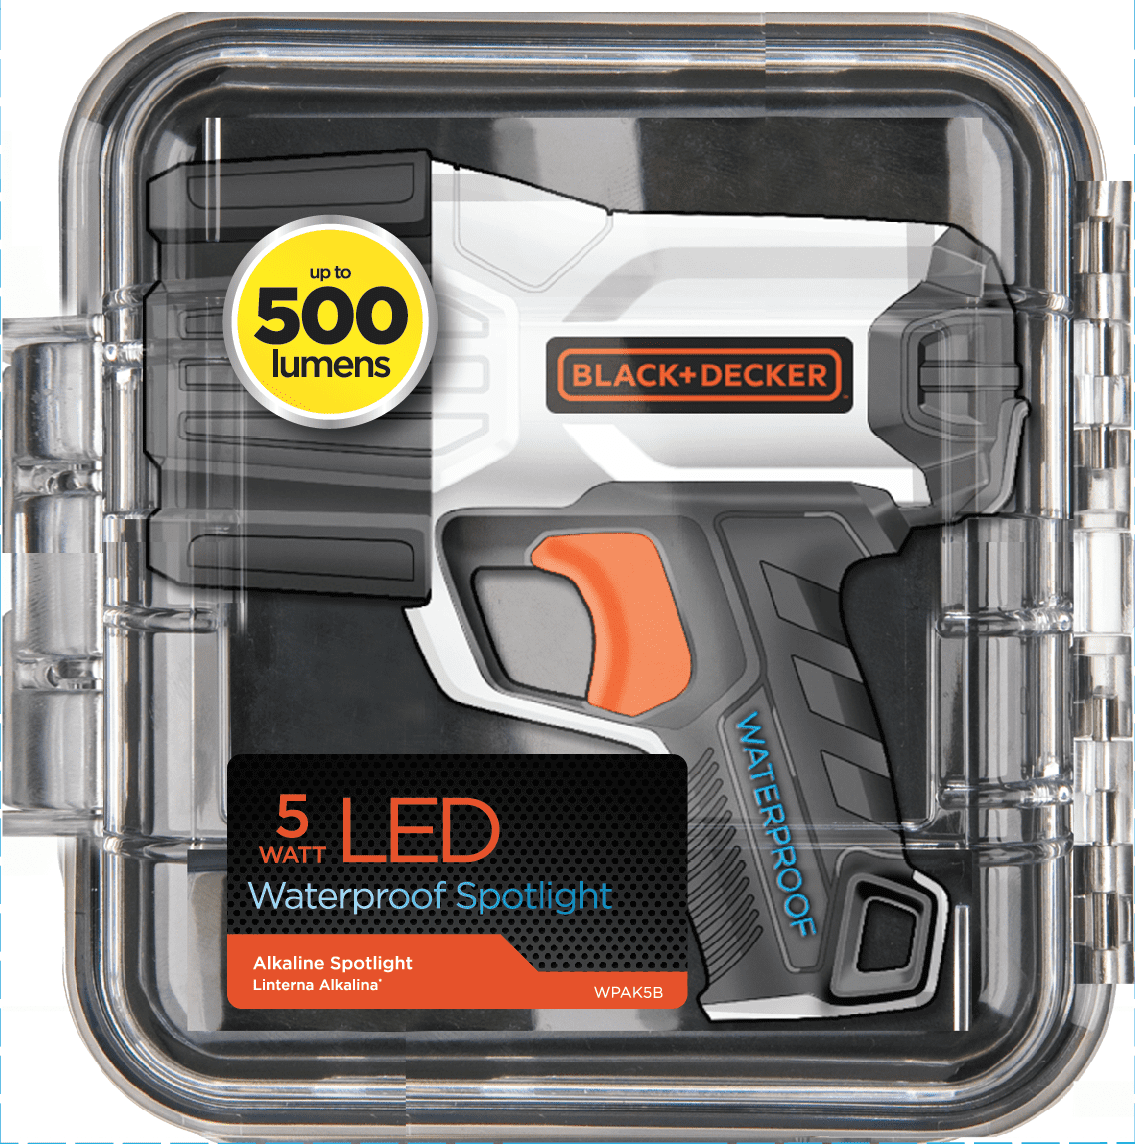 Black and Decker 500 Lumen 5 Watt Waterproof LED Spotlight (WPAK5B